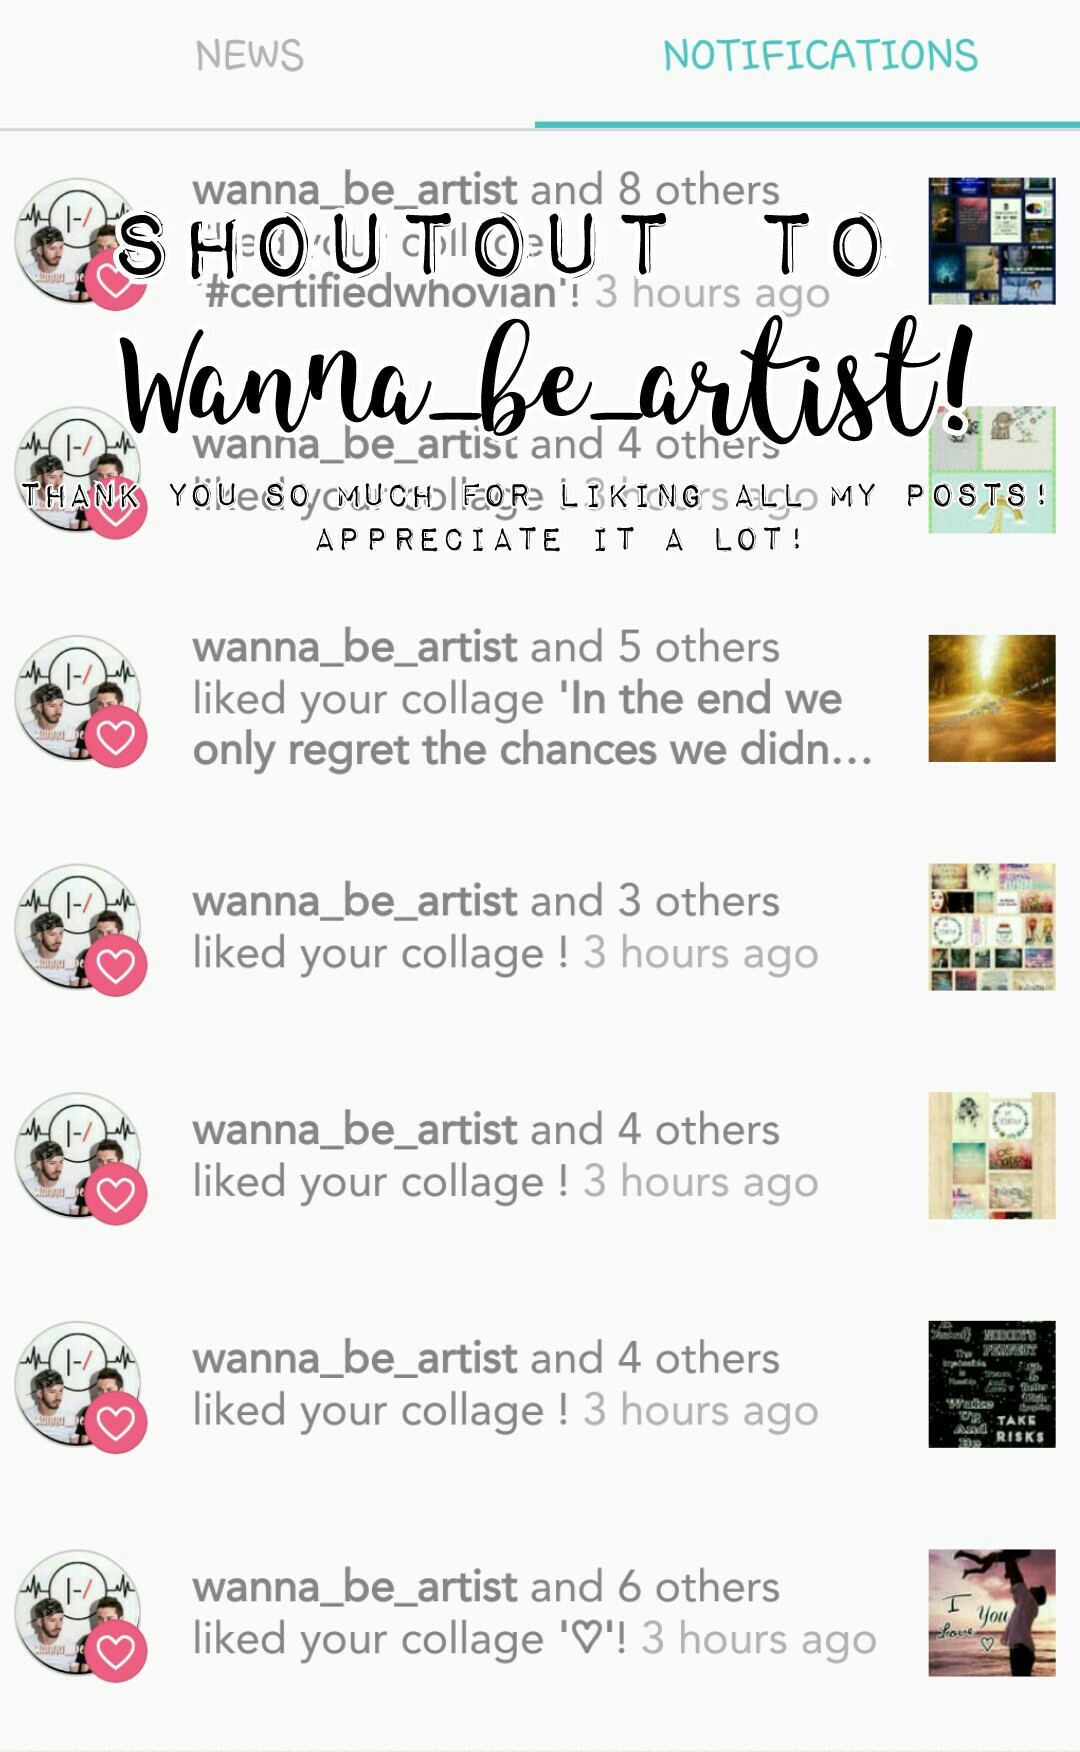 go follow Wanna_be_artist!